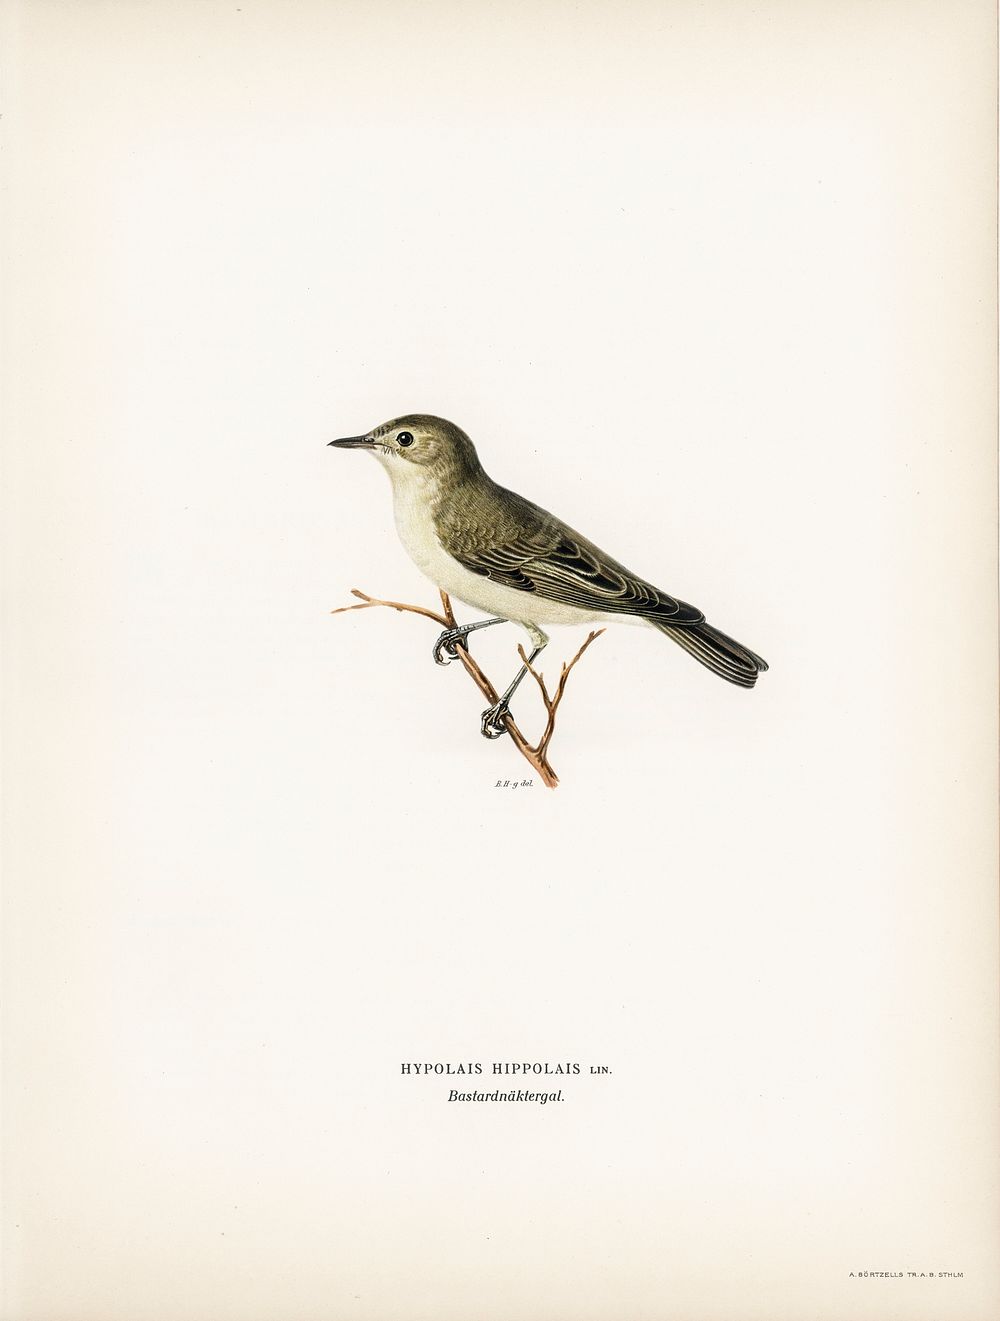 Tree warbler (Hypolais hipolais) illustrated | Free Photo Illustration ...